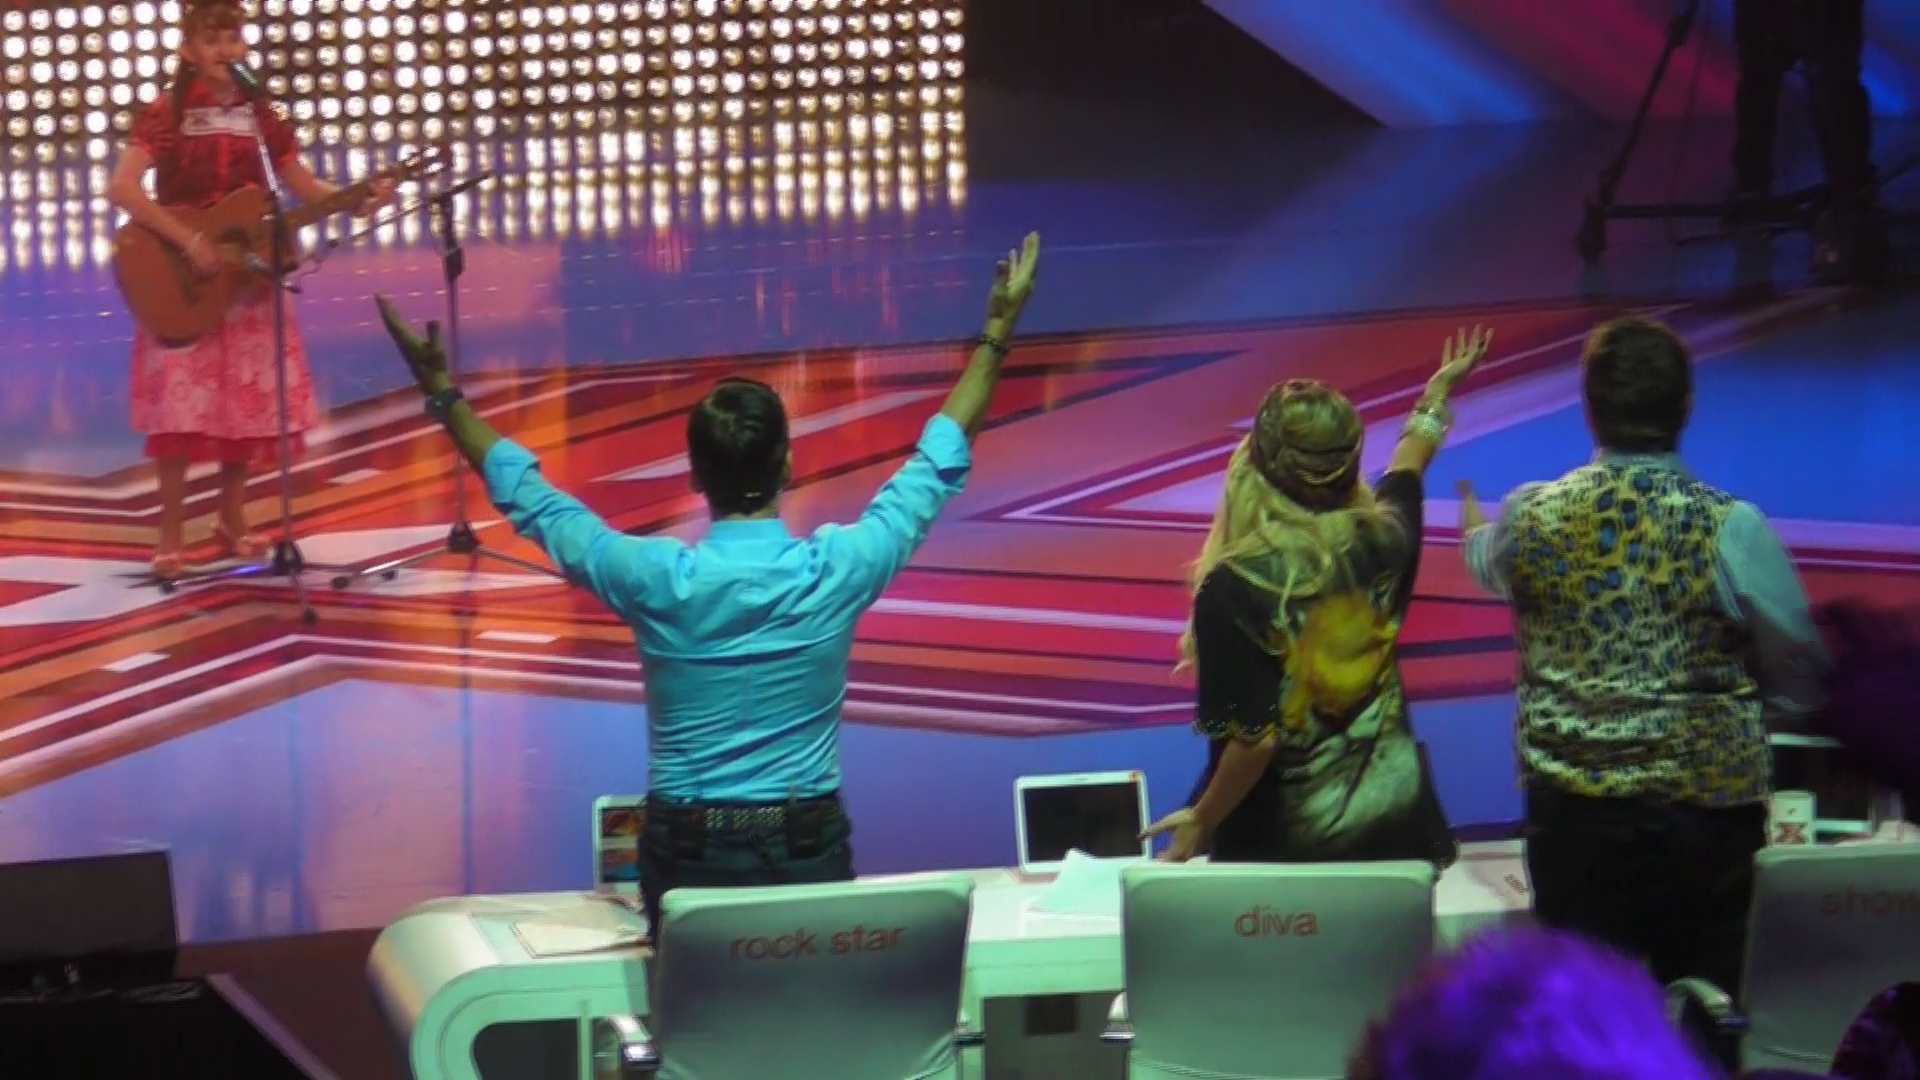 Cei trei jurati se ridica pentru a dansa pe melodia interpretata de concurenta